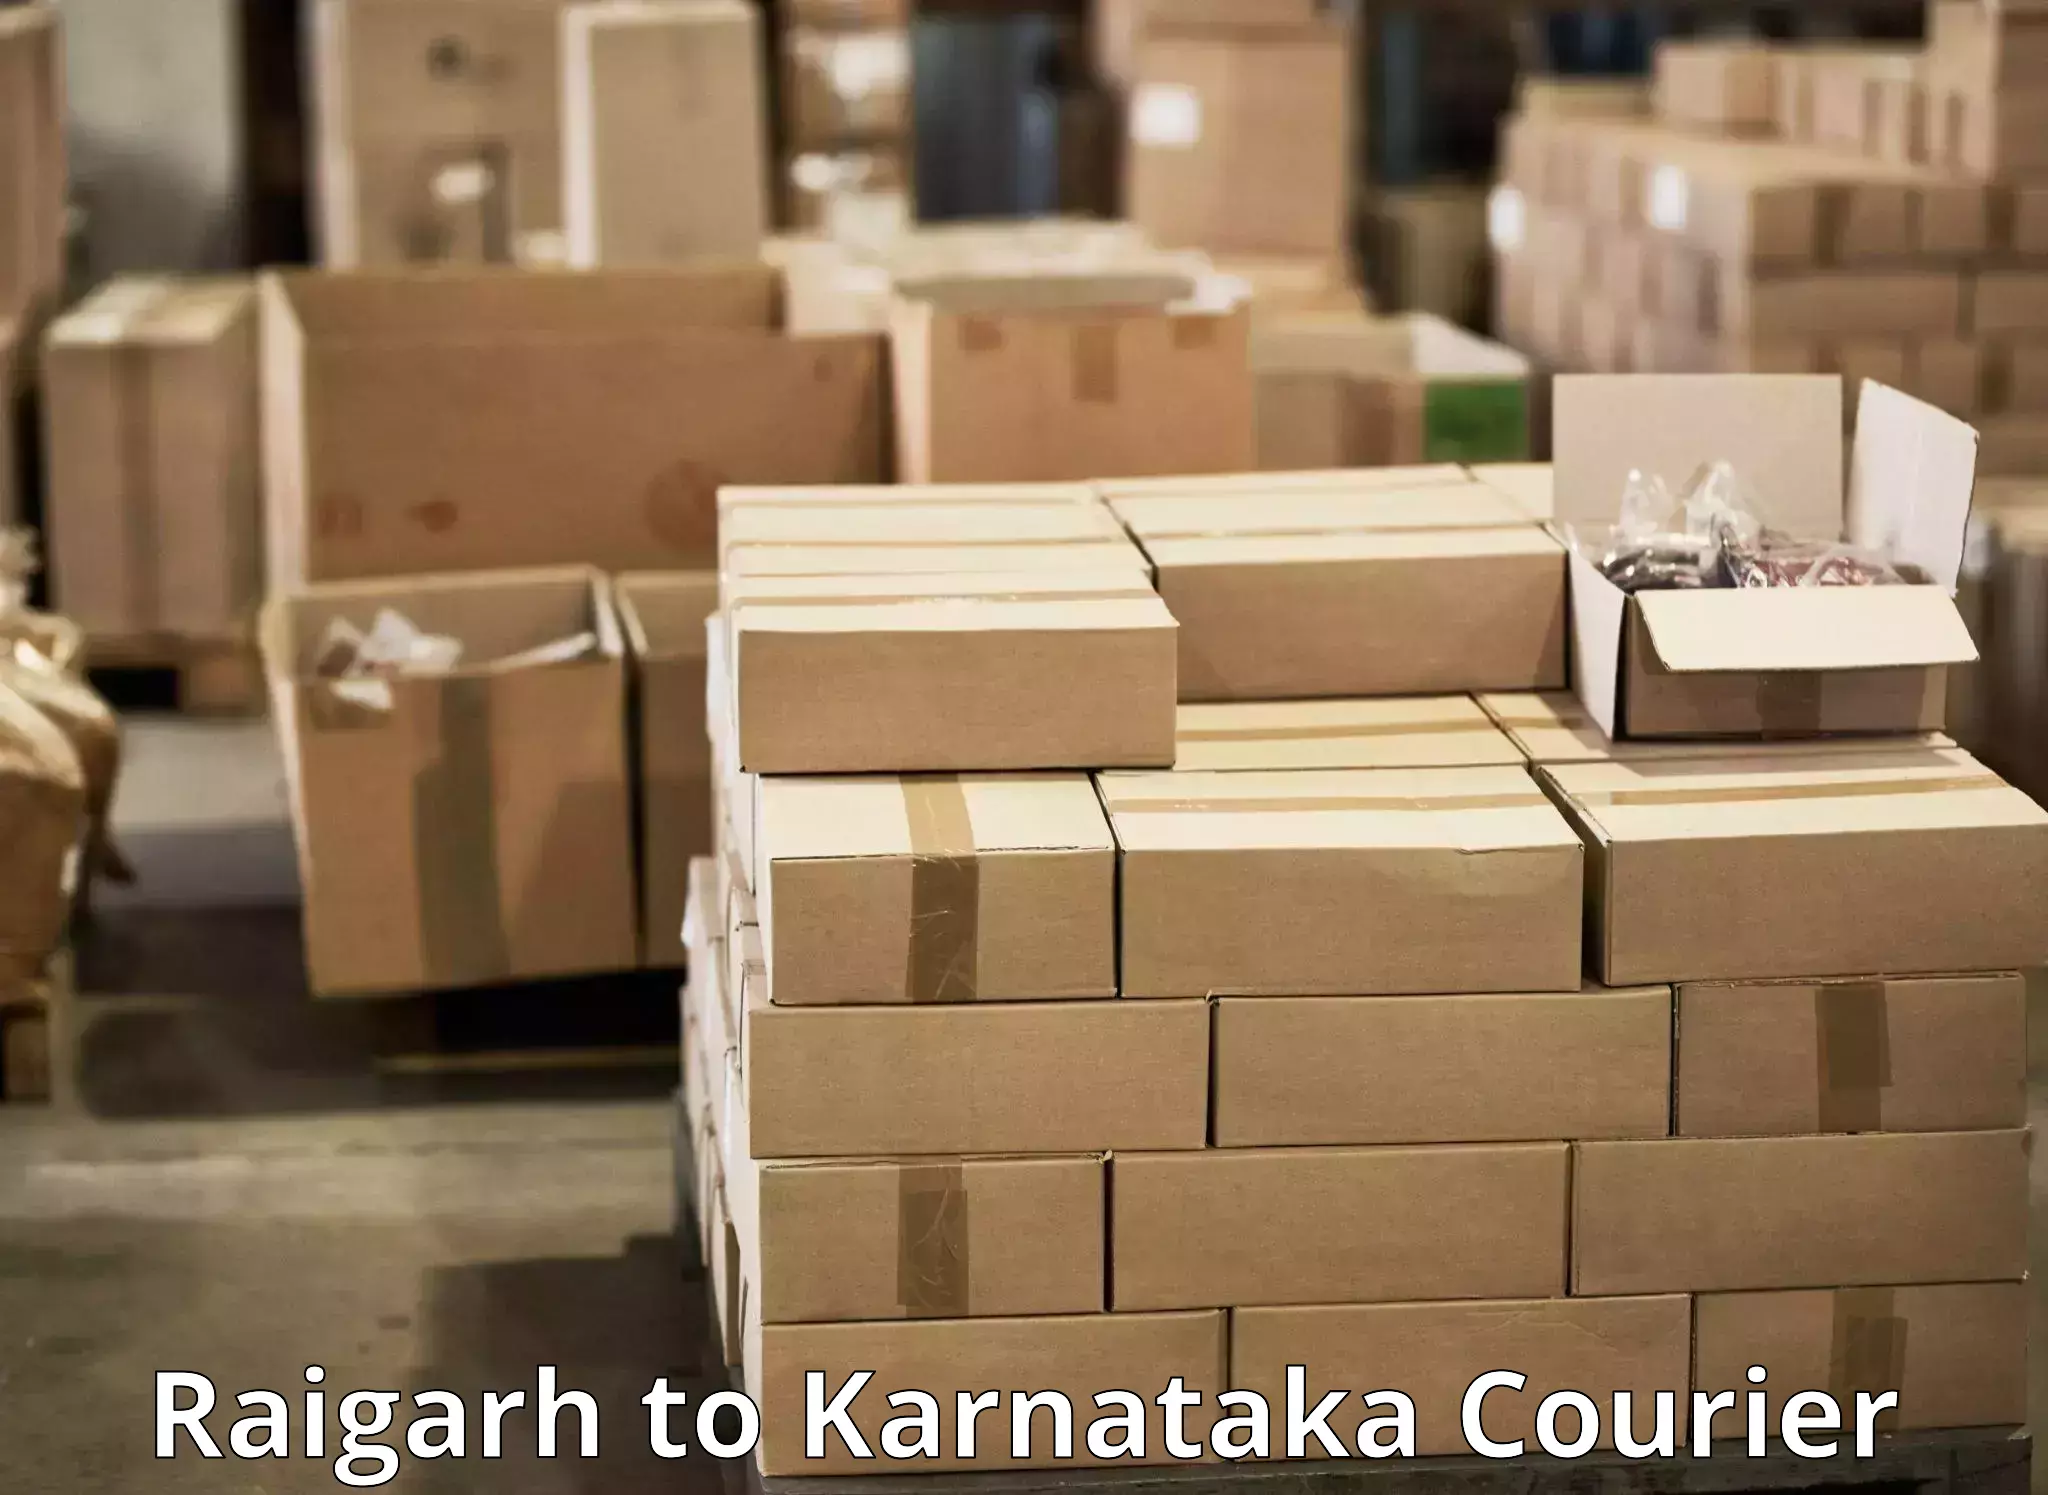 Courier app Raigarh to Karnataka